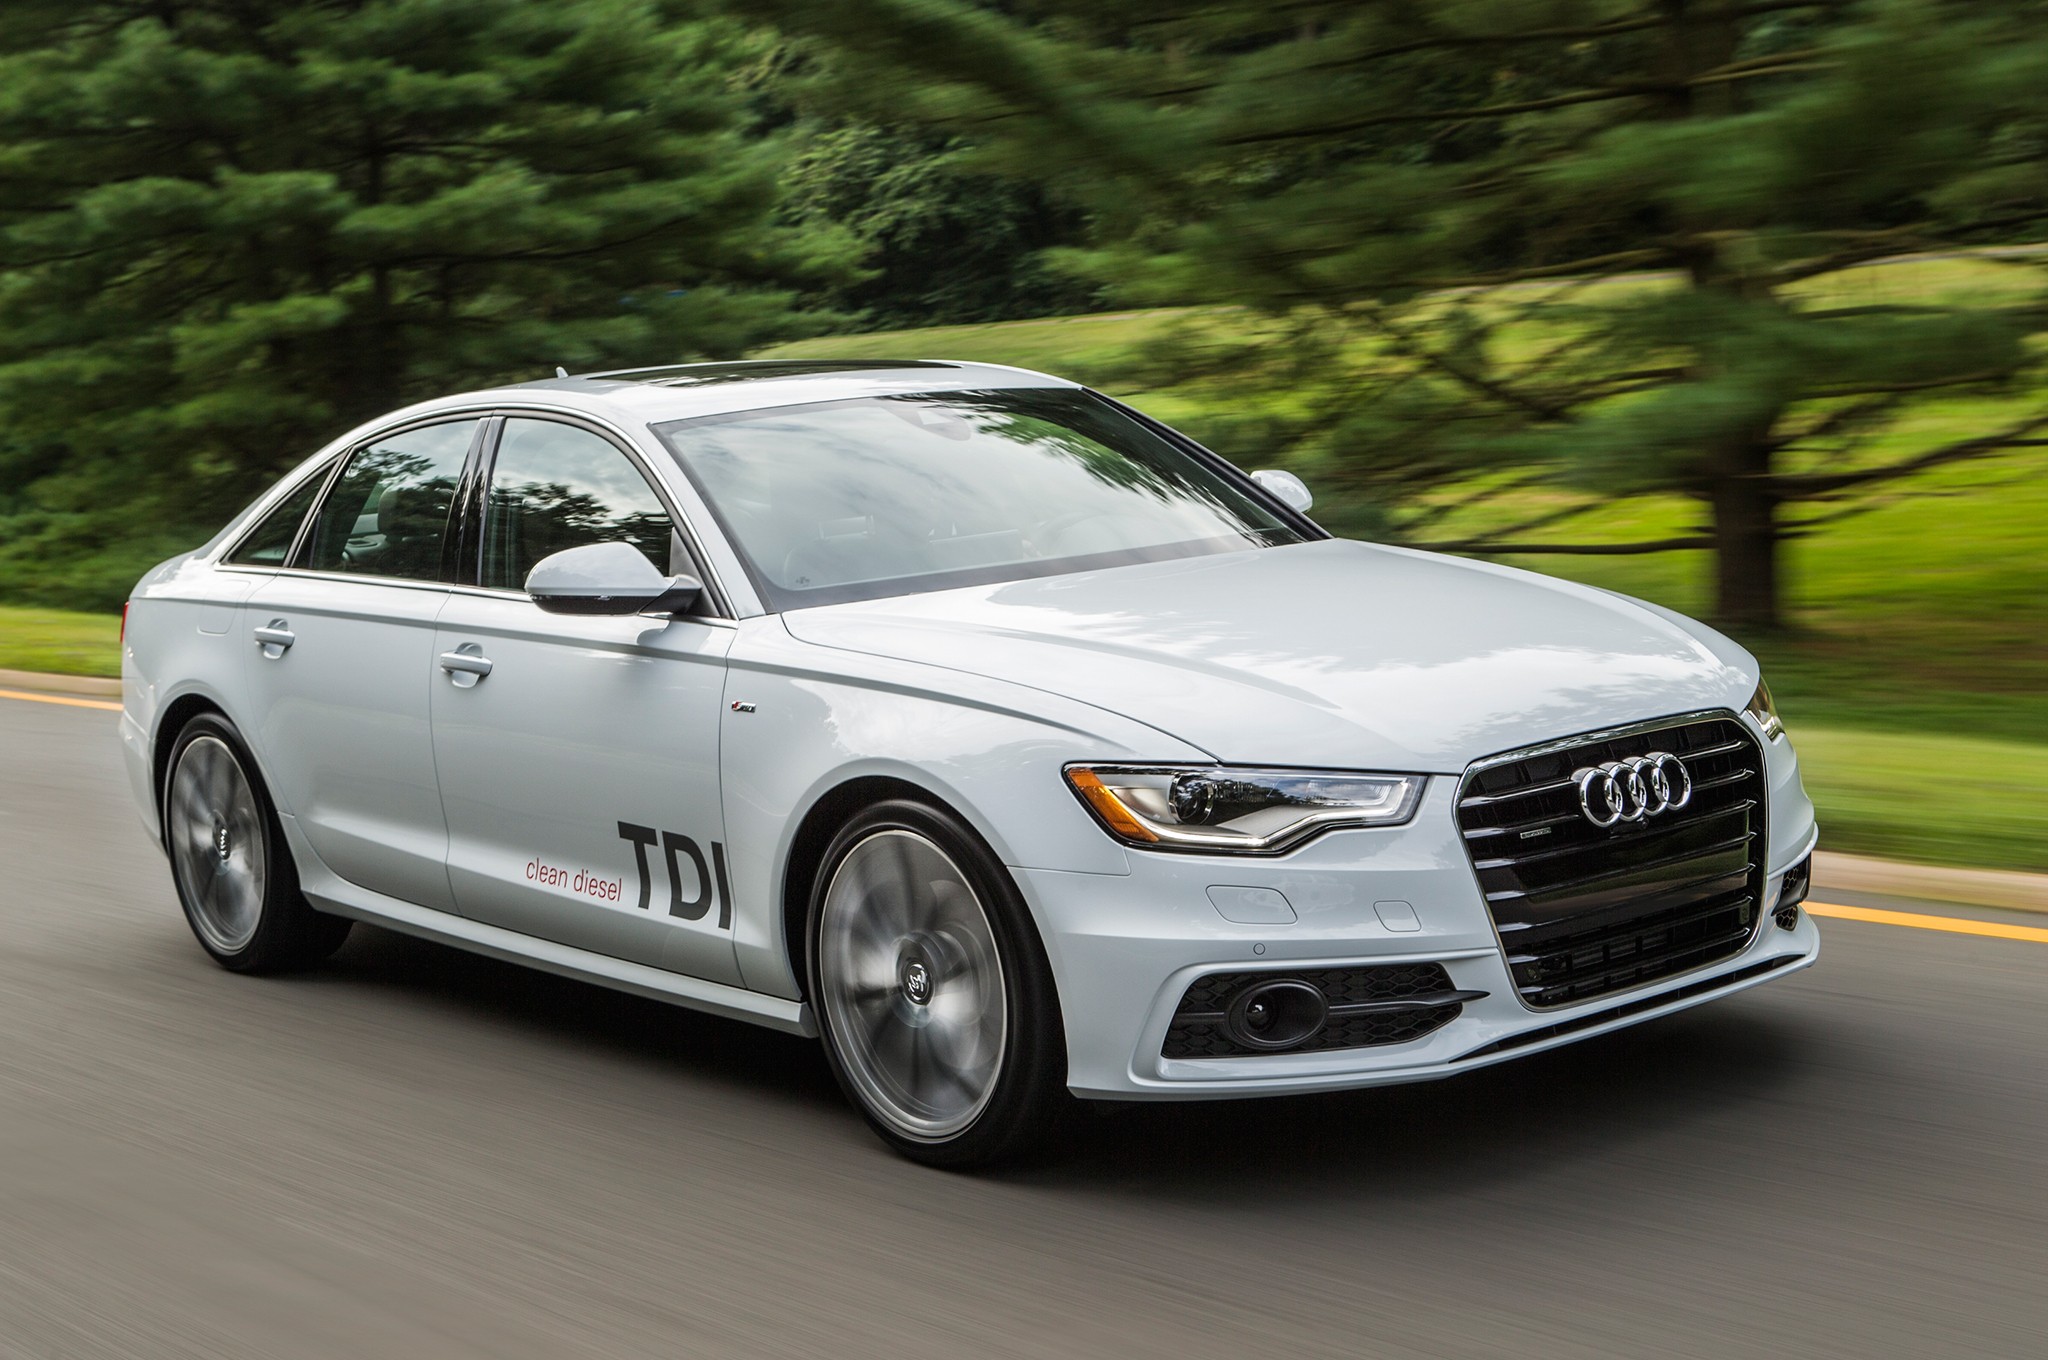 Audi festeja 25 años de su motor TDI con nueva tecnología